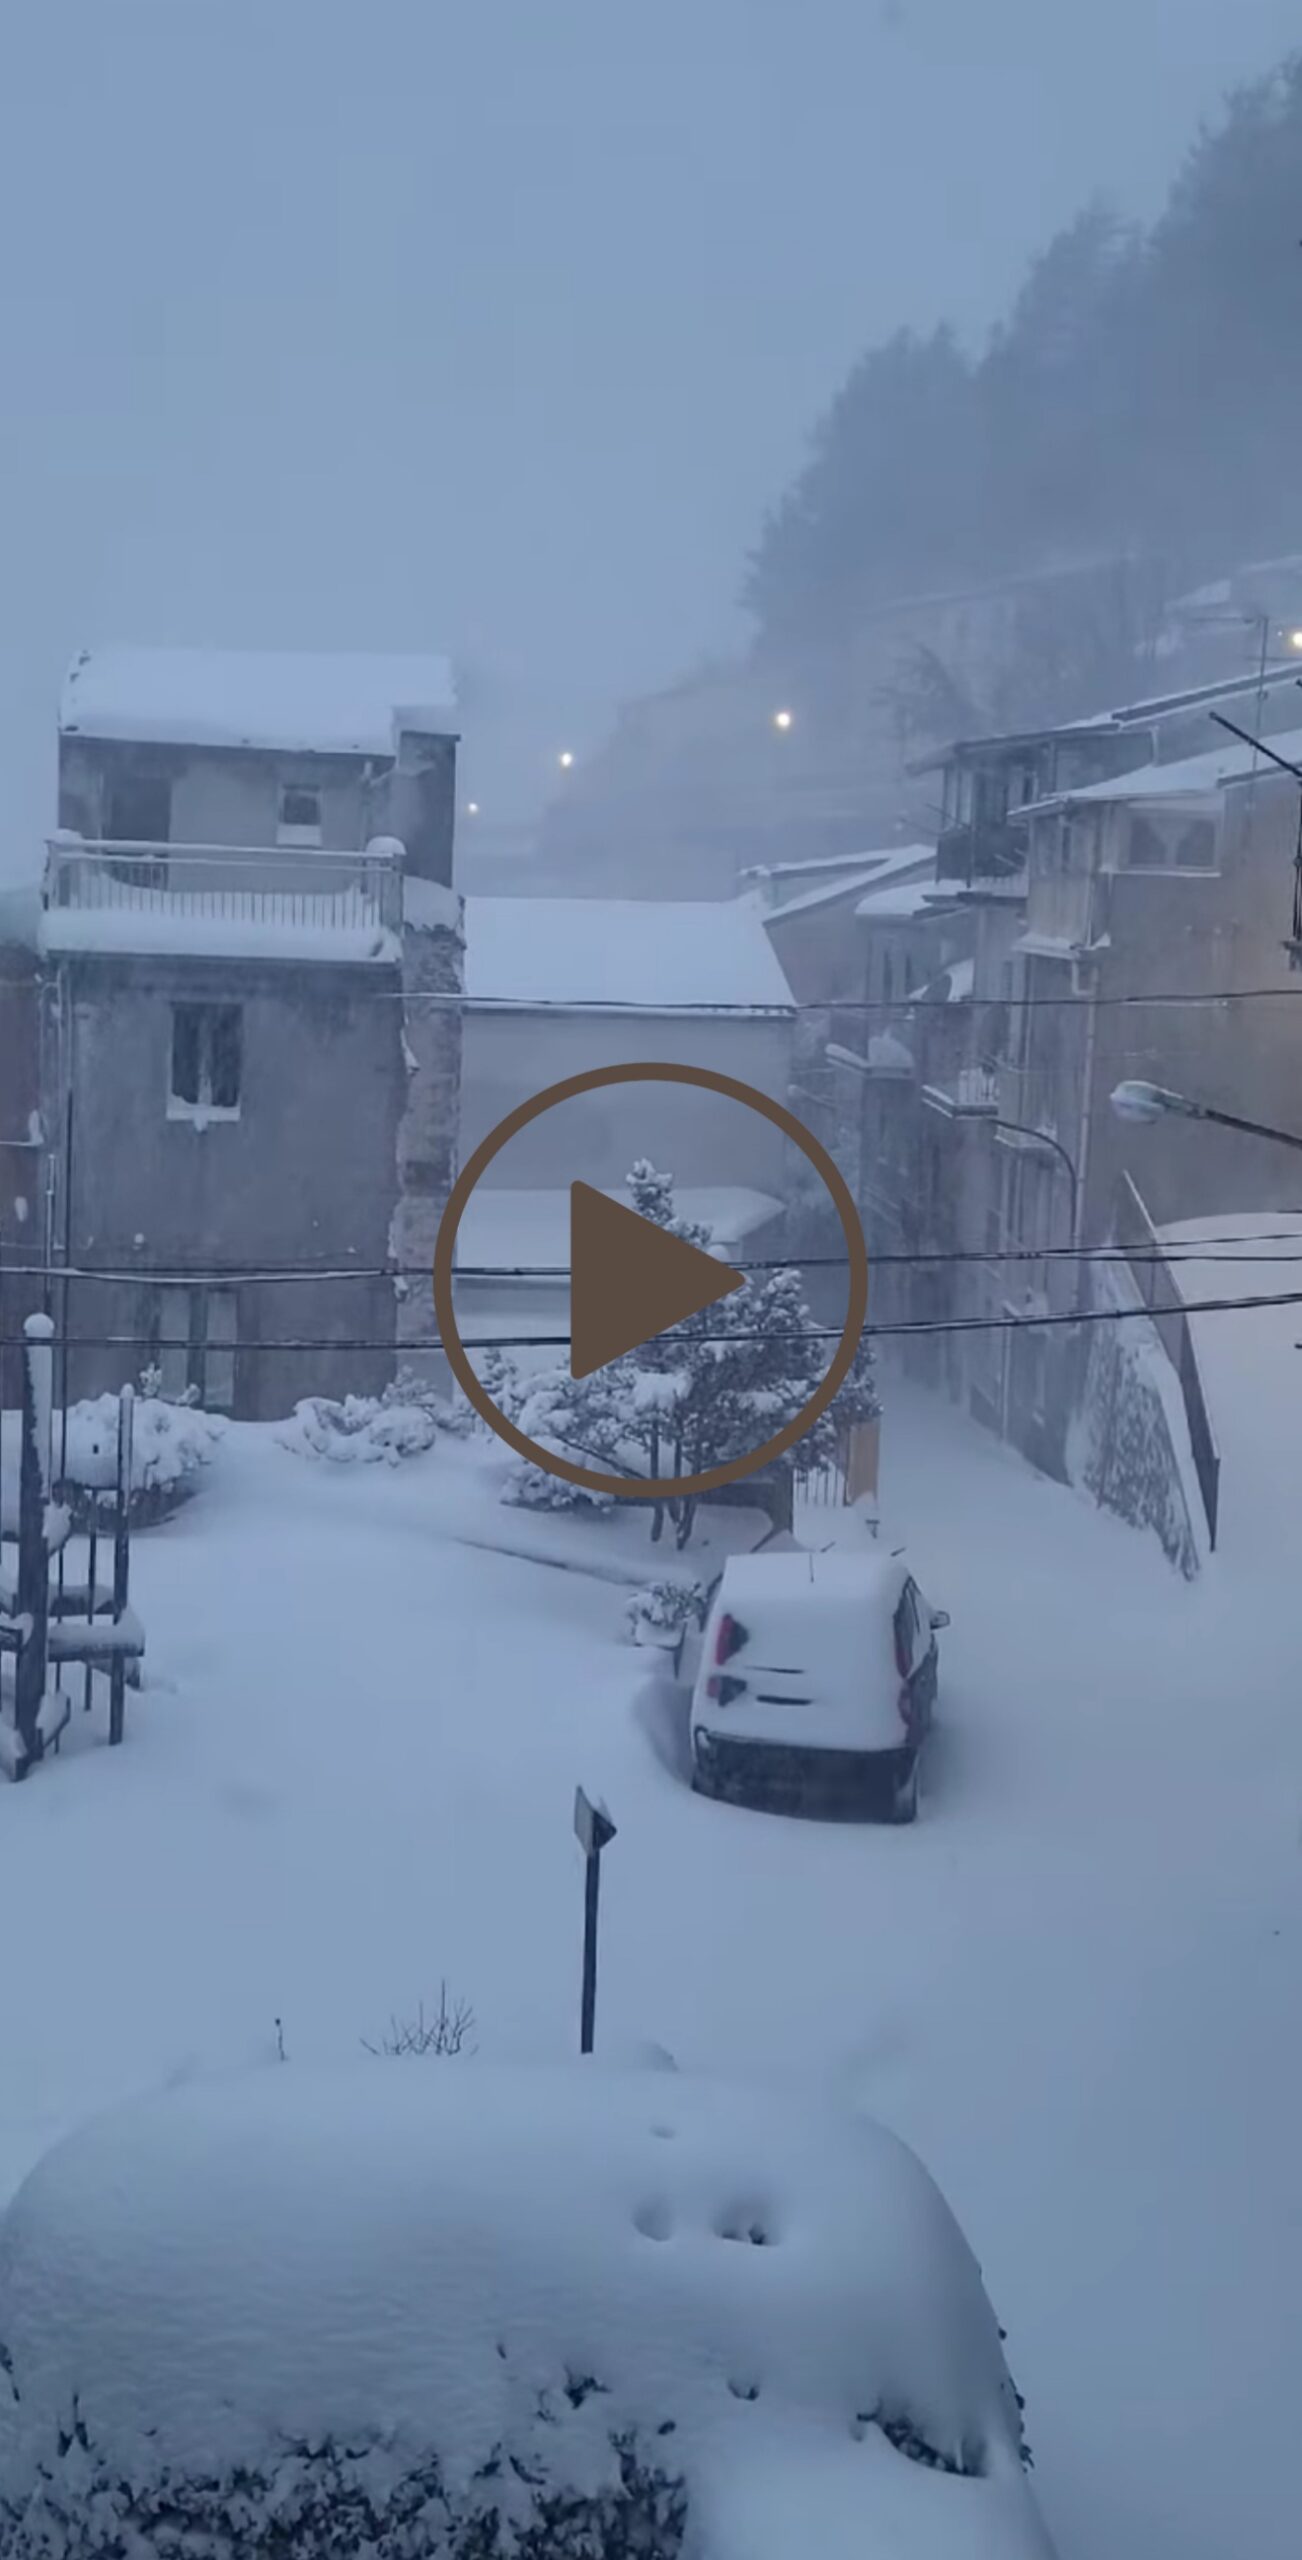 Meteo Sicilia: eccezionale nevicata in atto a Floresta! - VIDEO -